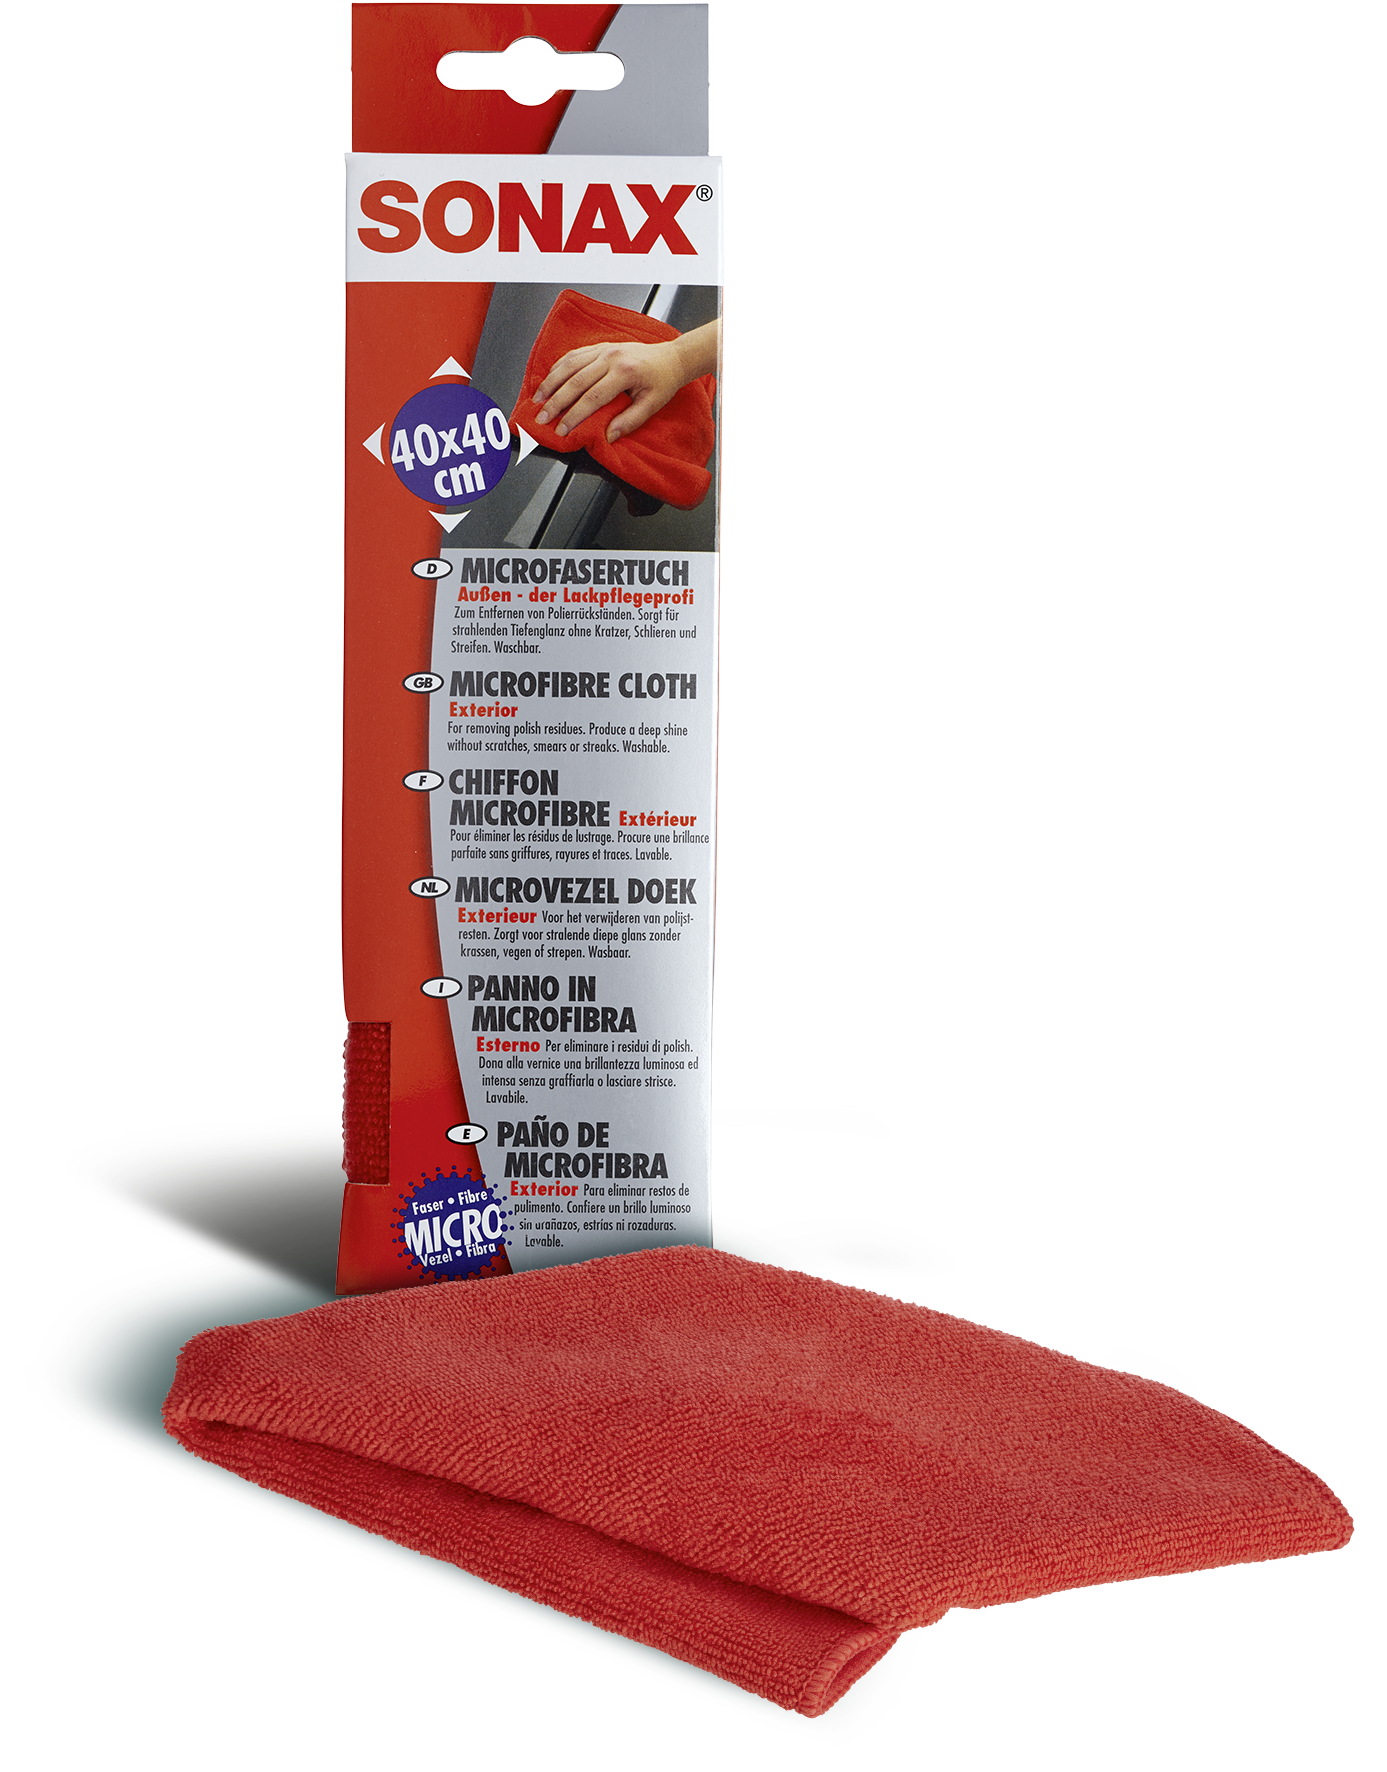 SONAX Microfasertuch Außen - der Lackpflegeprofi 416200